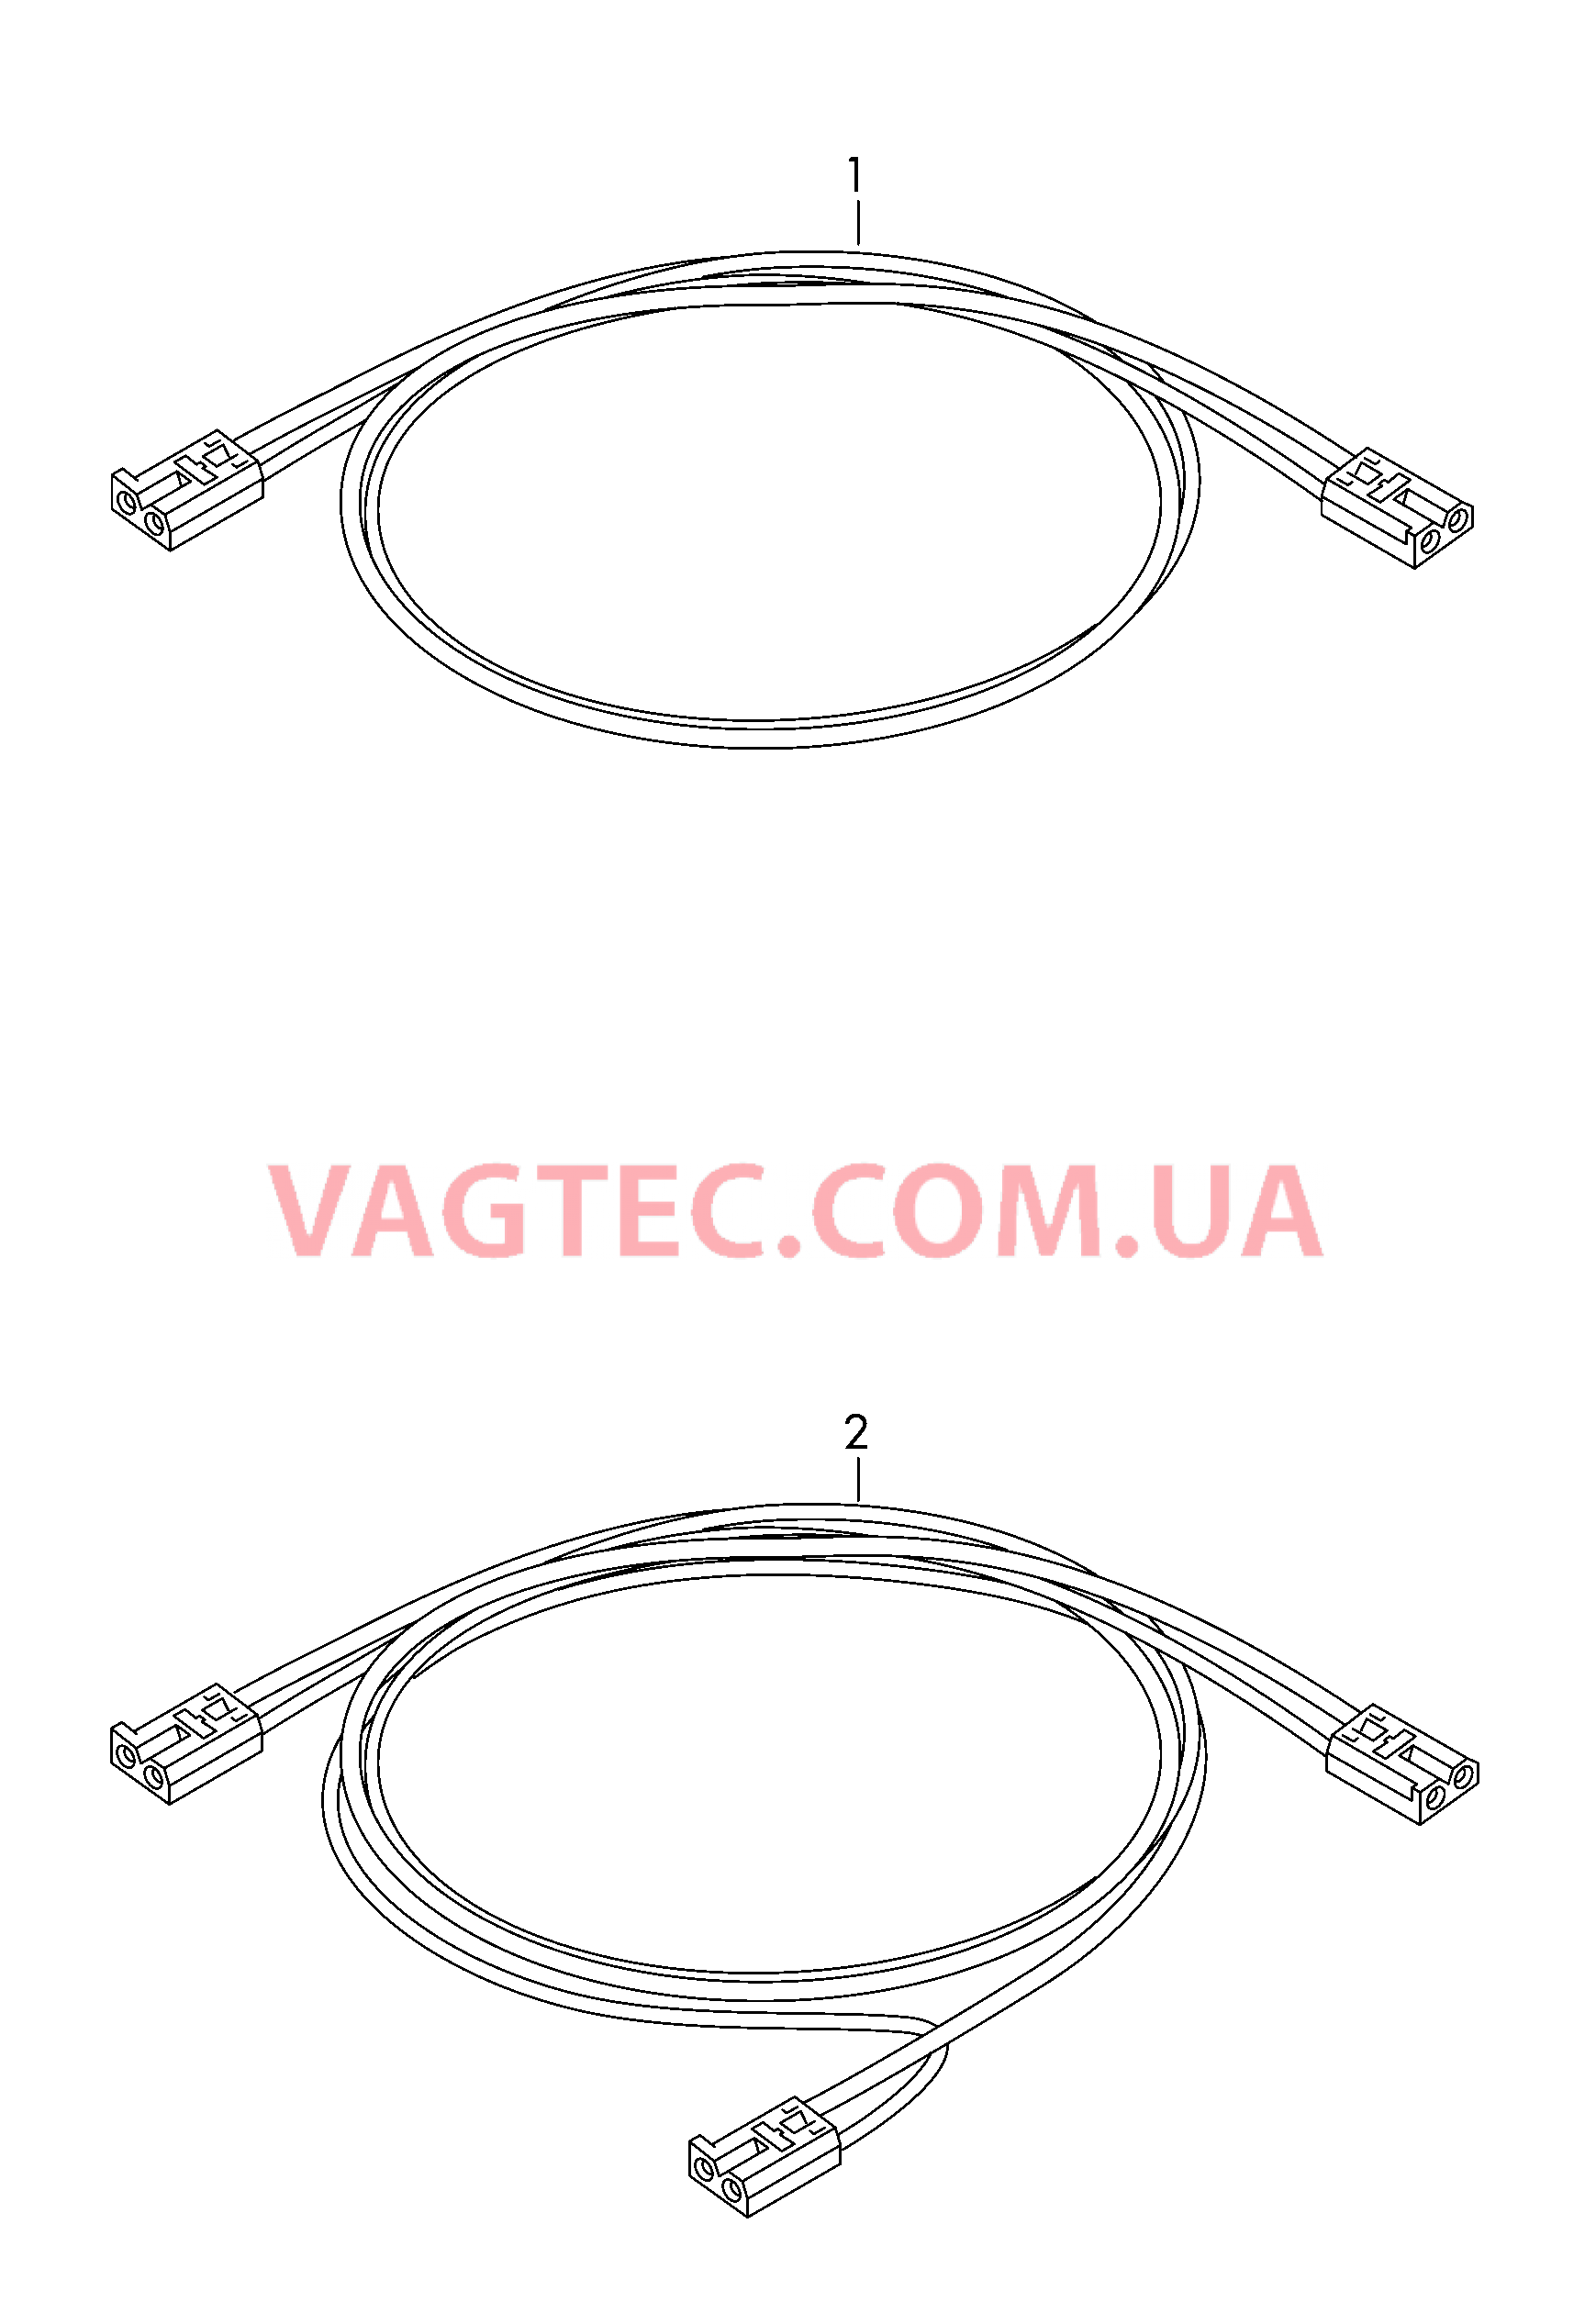 Оптоволоконный кабель  для VOLKSWAGEN Crafter 2015